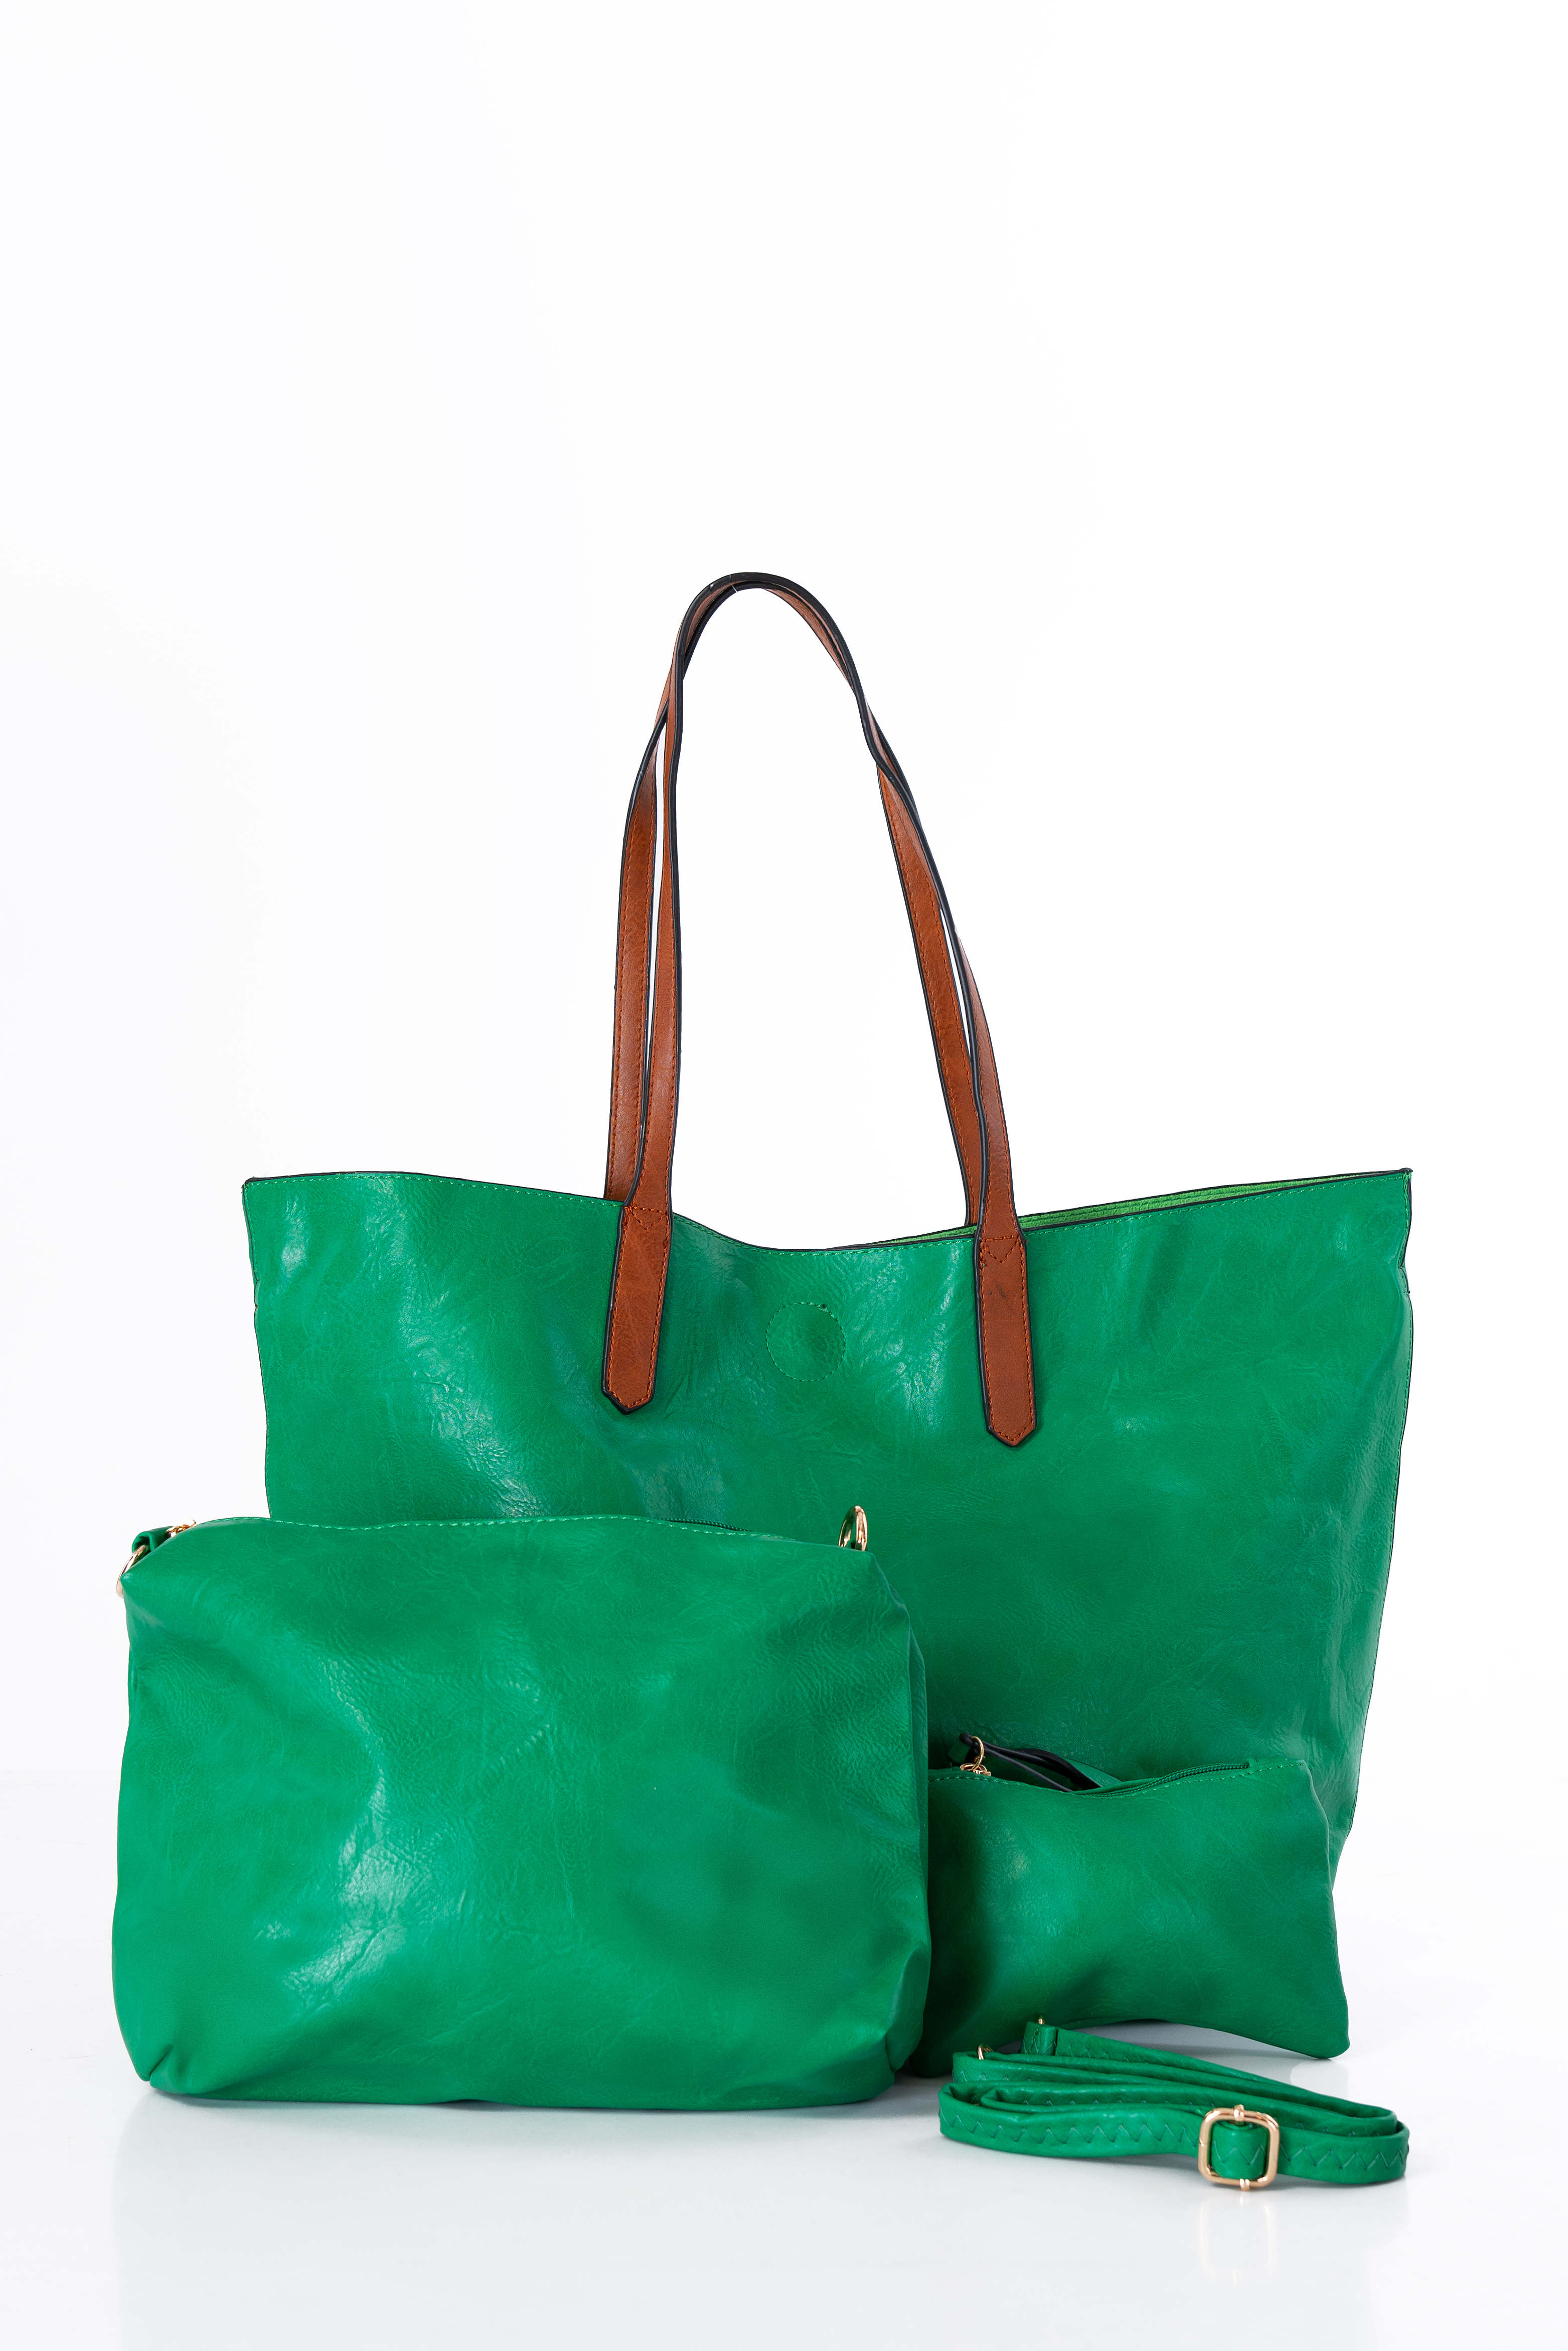 Дамска голяма чанта 3в1 в зелено